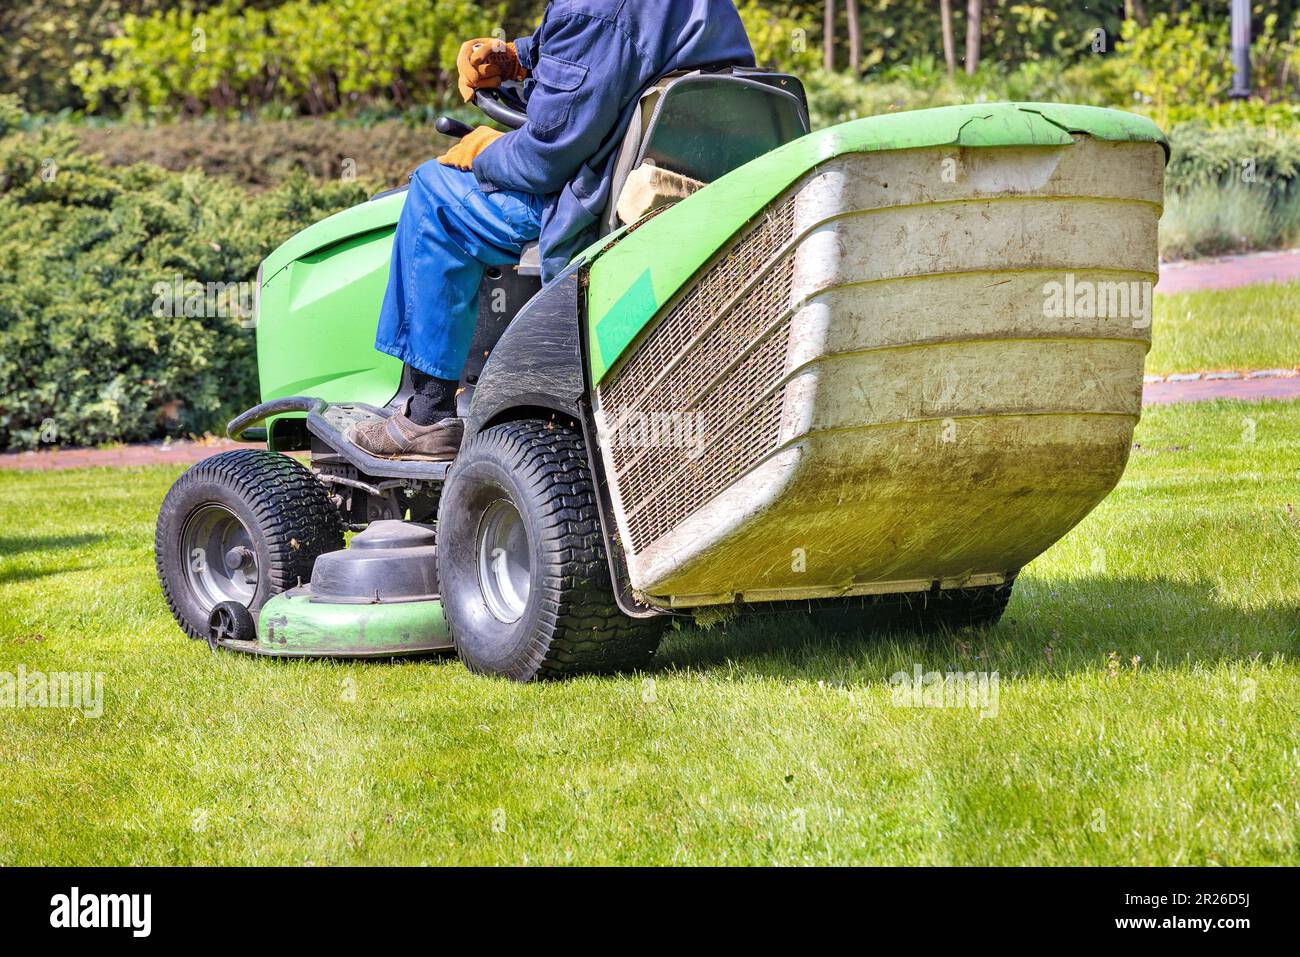 Un travailleur en combinaison bleue conduit une tondeuse à gazon et tond  l'herbe verte de la pelouse. sur un fond flou d'un jardin de printemps.  Copier l'espace Photo Stock - Alamy